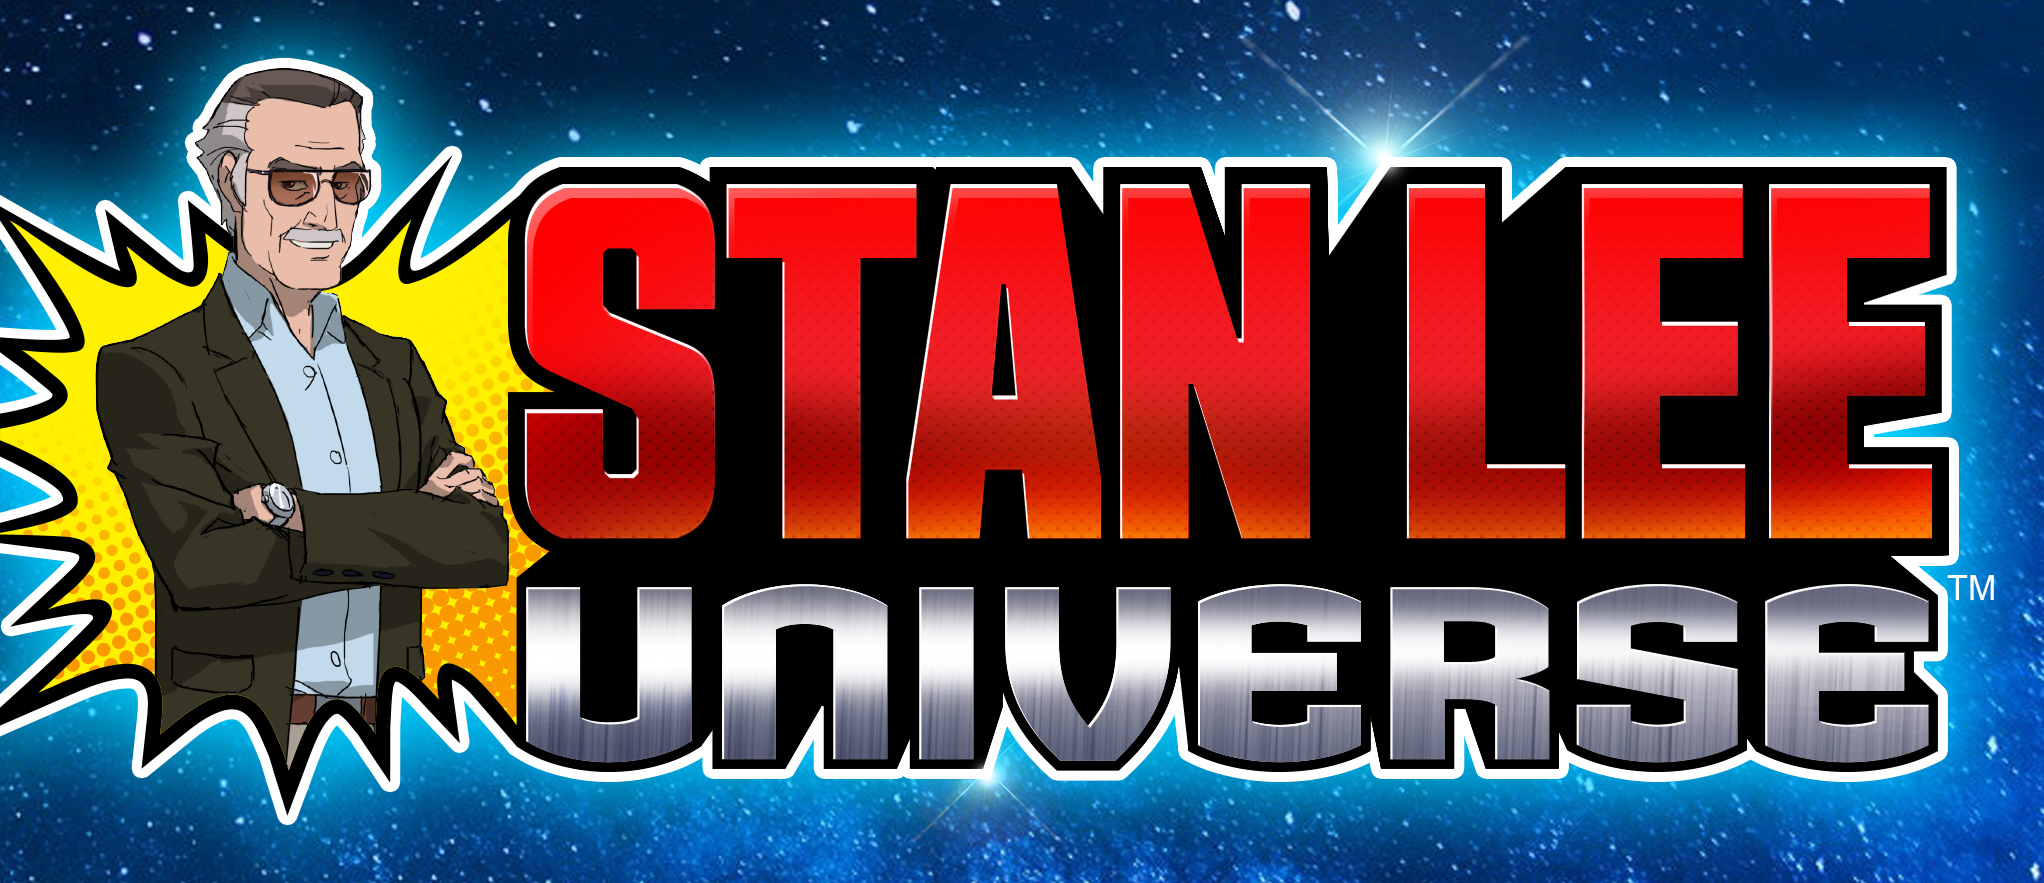 Stan Lee Universe logo v2d